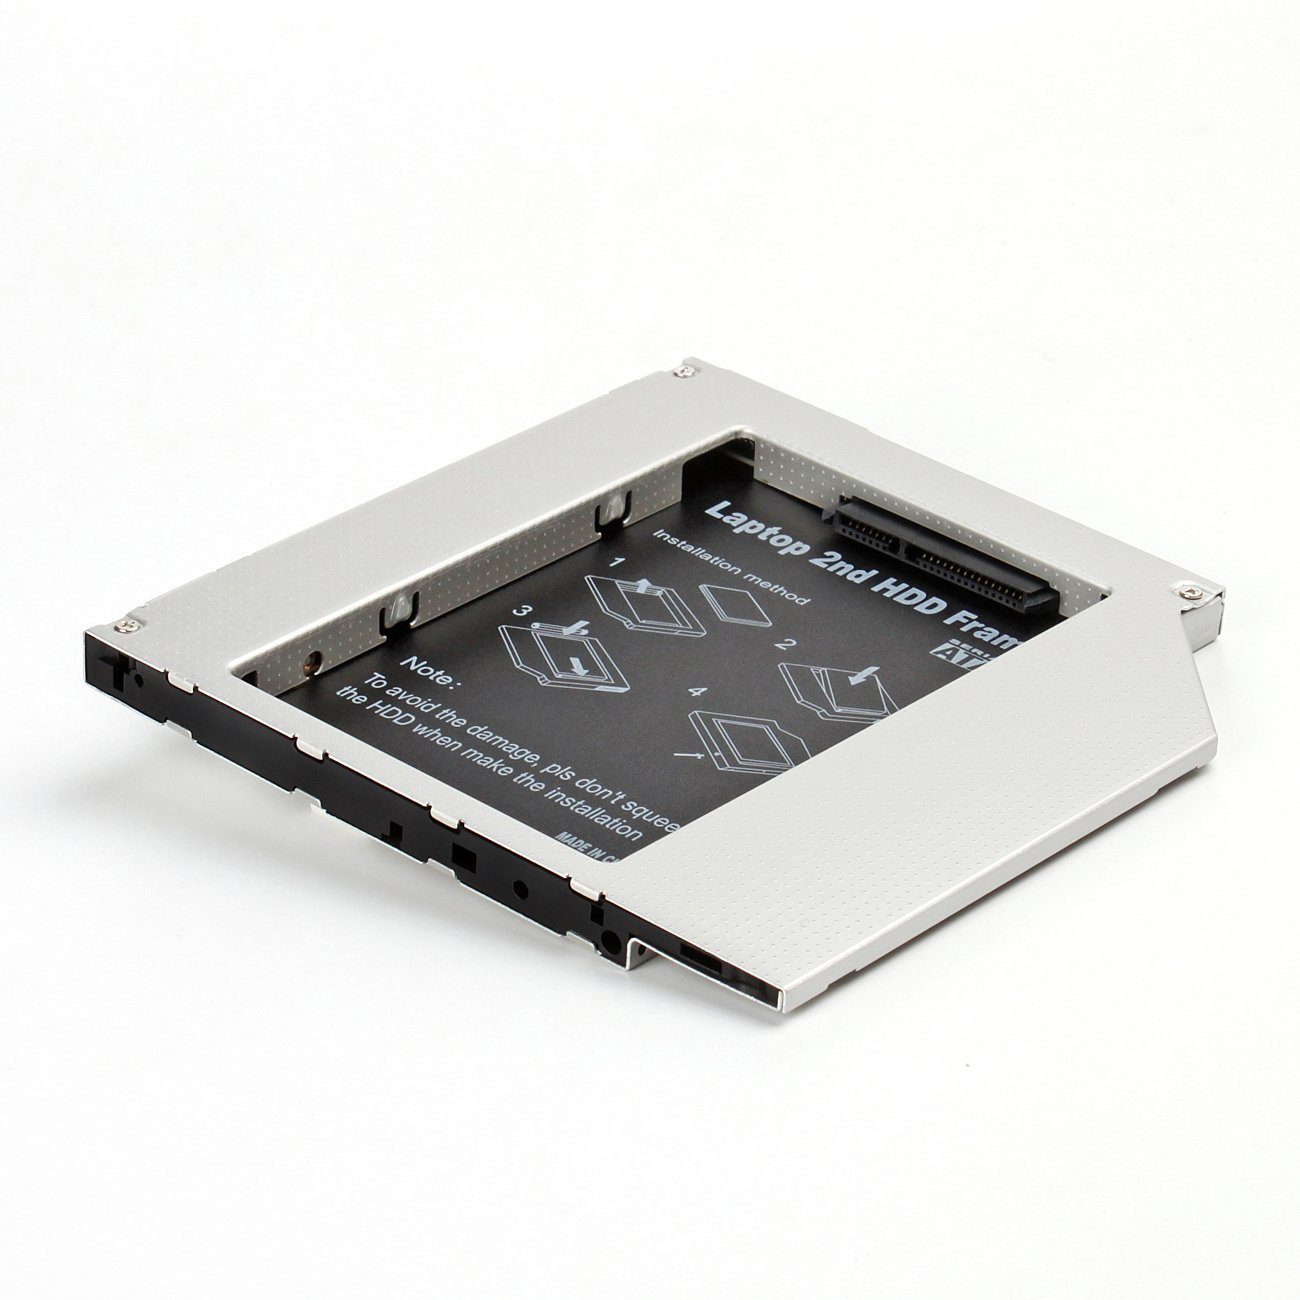 Salcar Festplatten-Gehäuse »SALCAR 2nd HDD/SSD SATA 3.0/2.HDD ODD SATA III  Laufwerkschacht Adapter/Serial ATA Caddy für 9mm SATA 2,5 Zoll Festplatte  (Aluminium)« online kaufen | OTTO